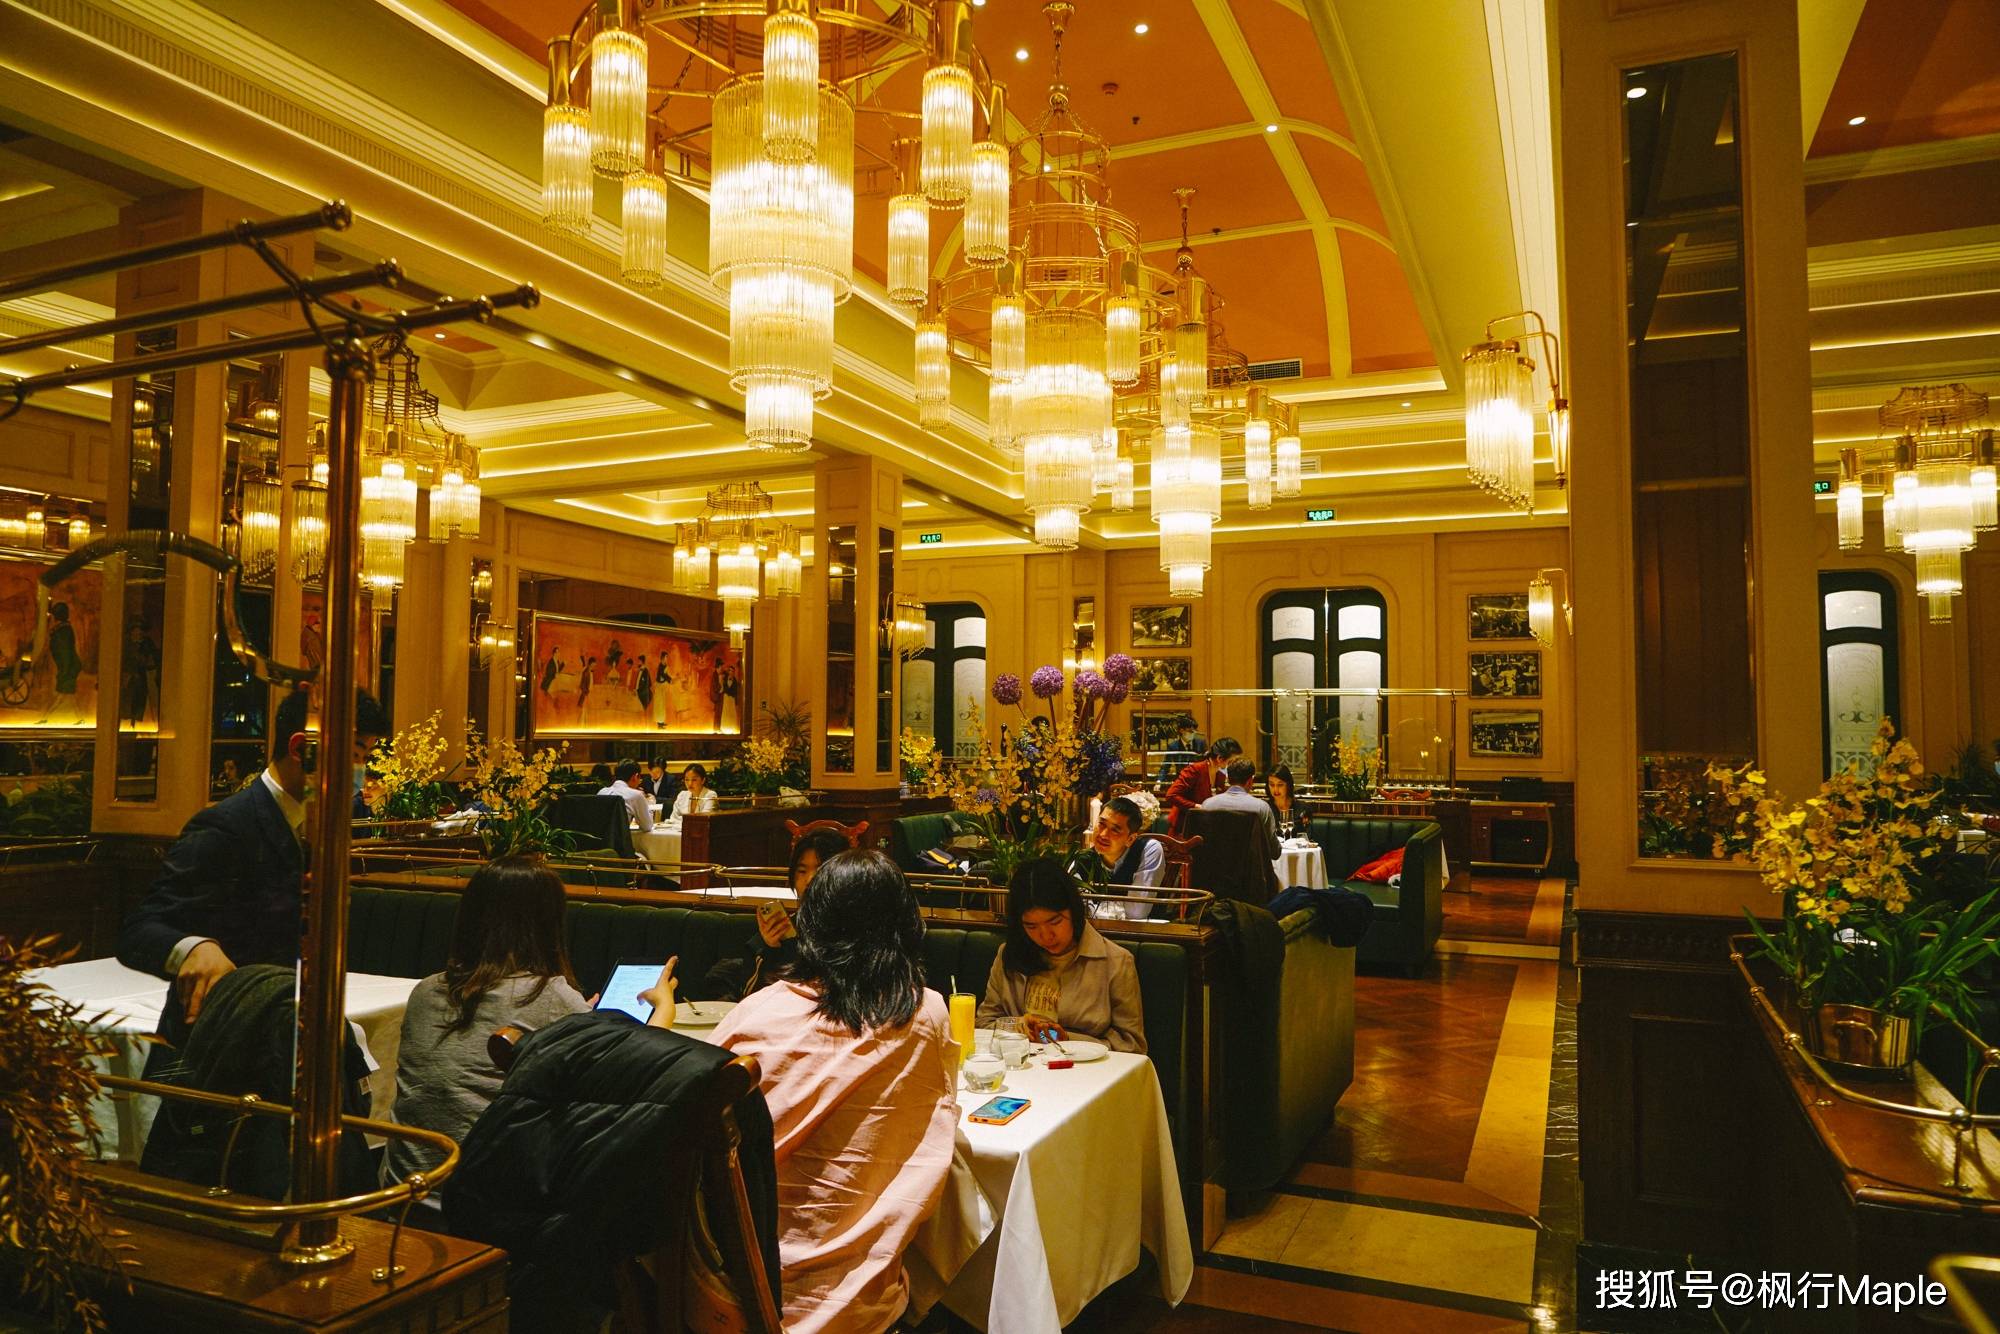 上海餐厅周2021图片